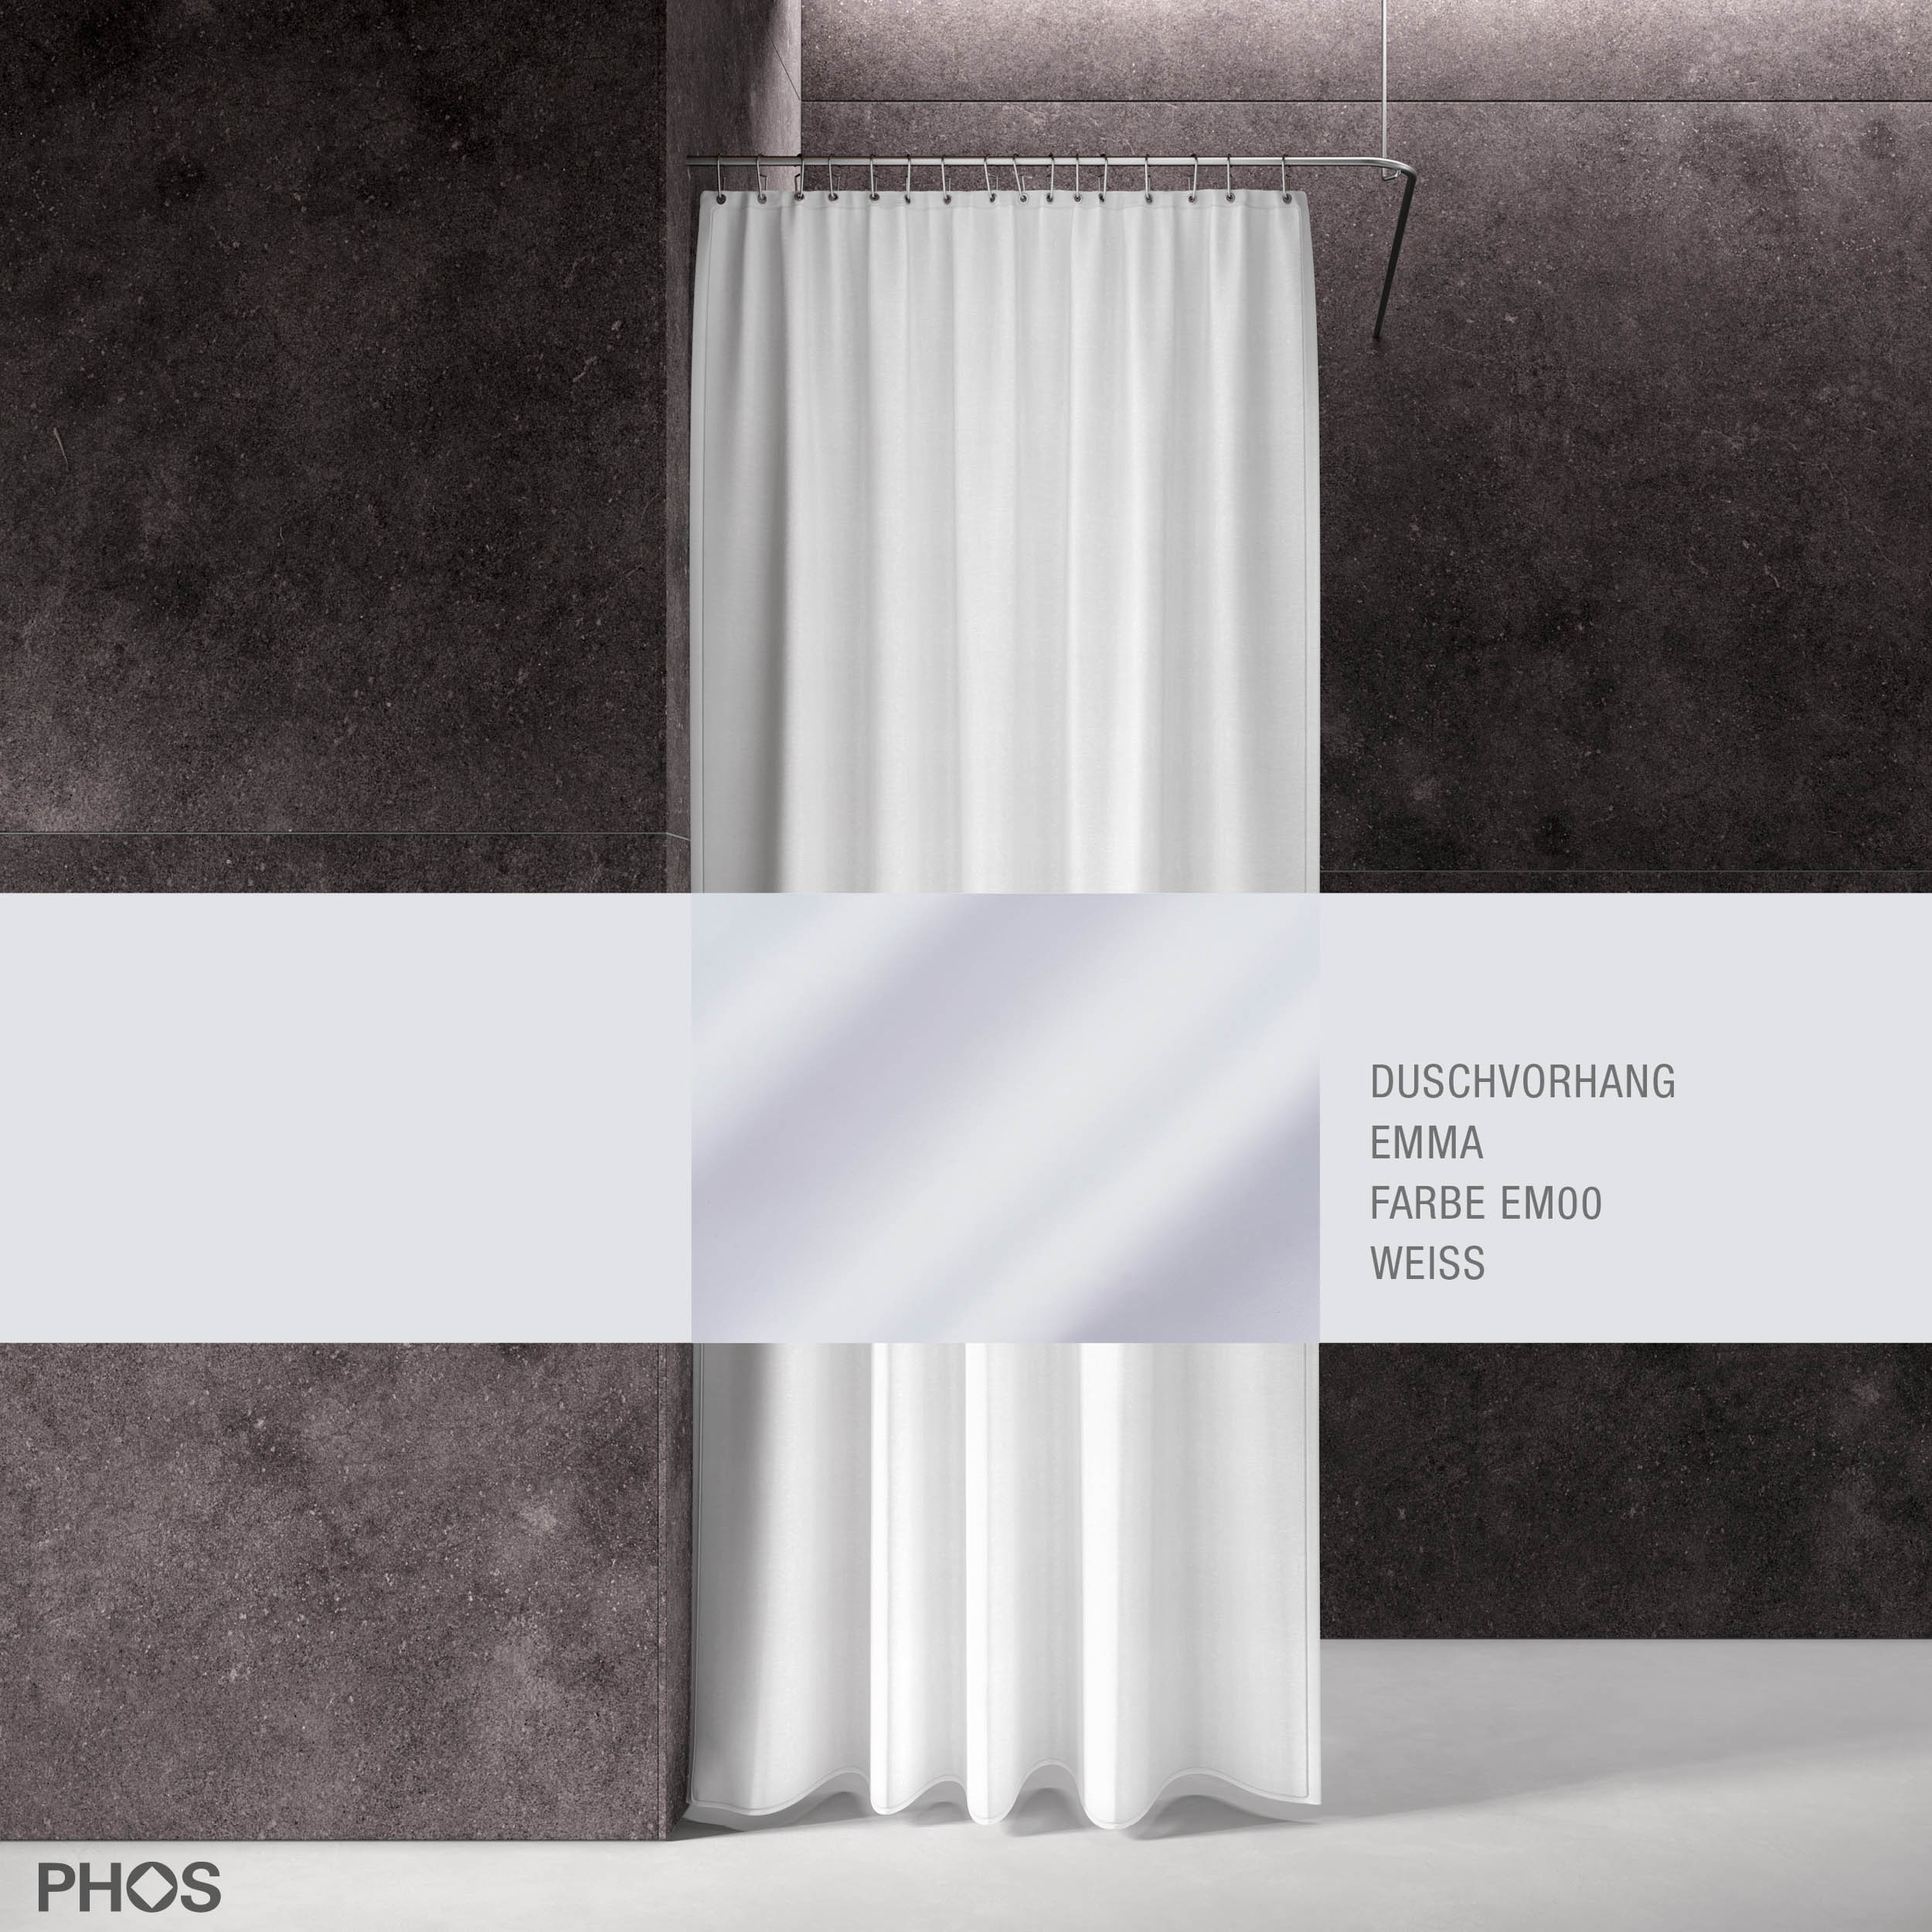 Duschvorhang EMMA Weiß, 200 cm x 200 cm